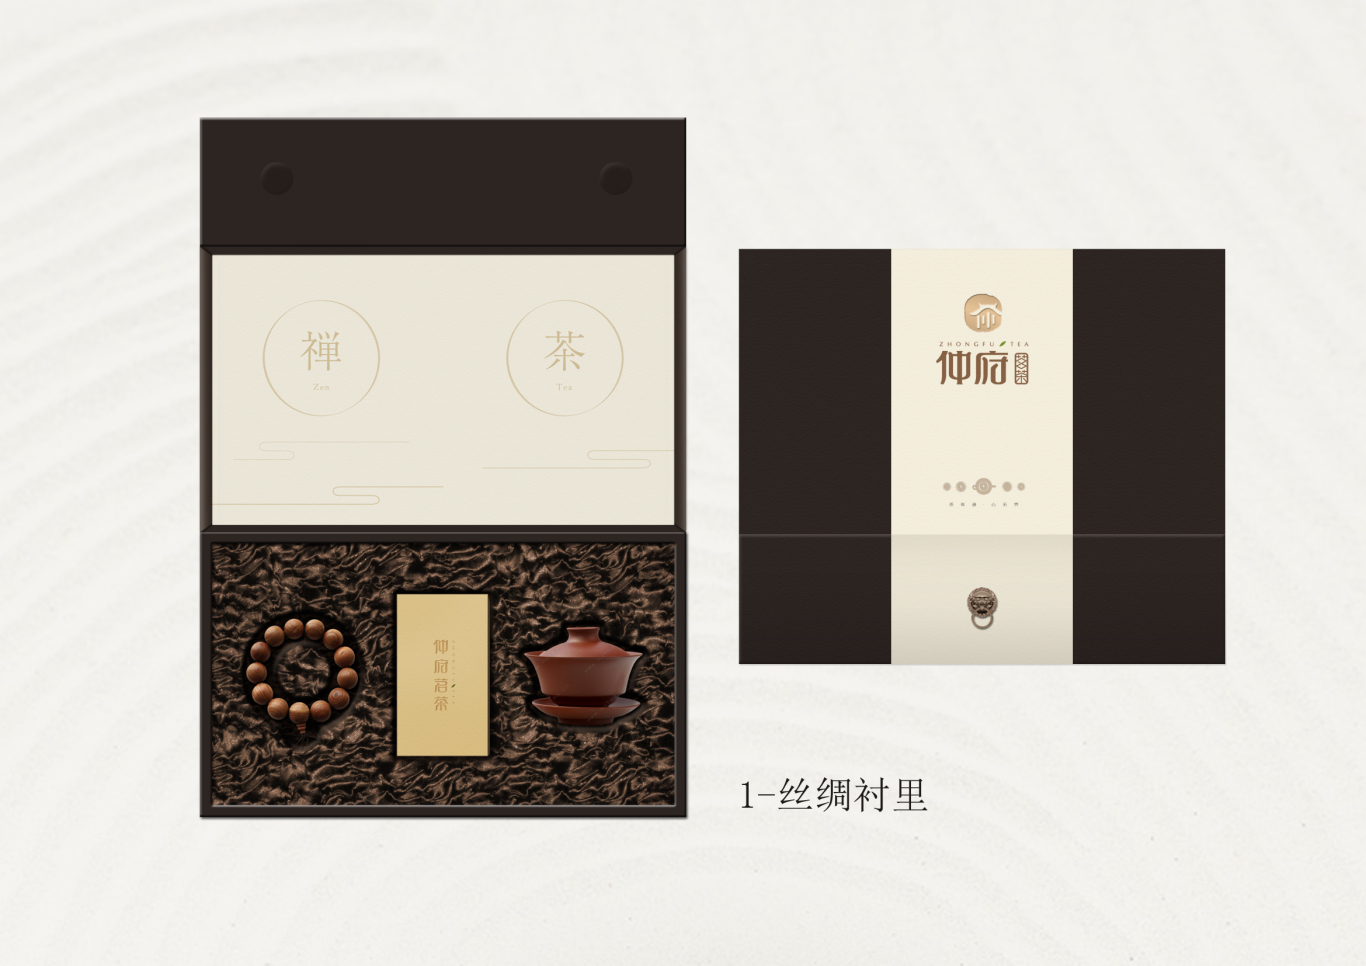 仲府茗茶 高端茶业品牌形象设计图22